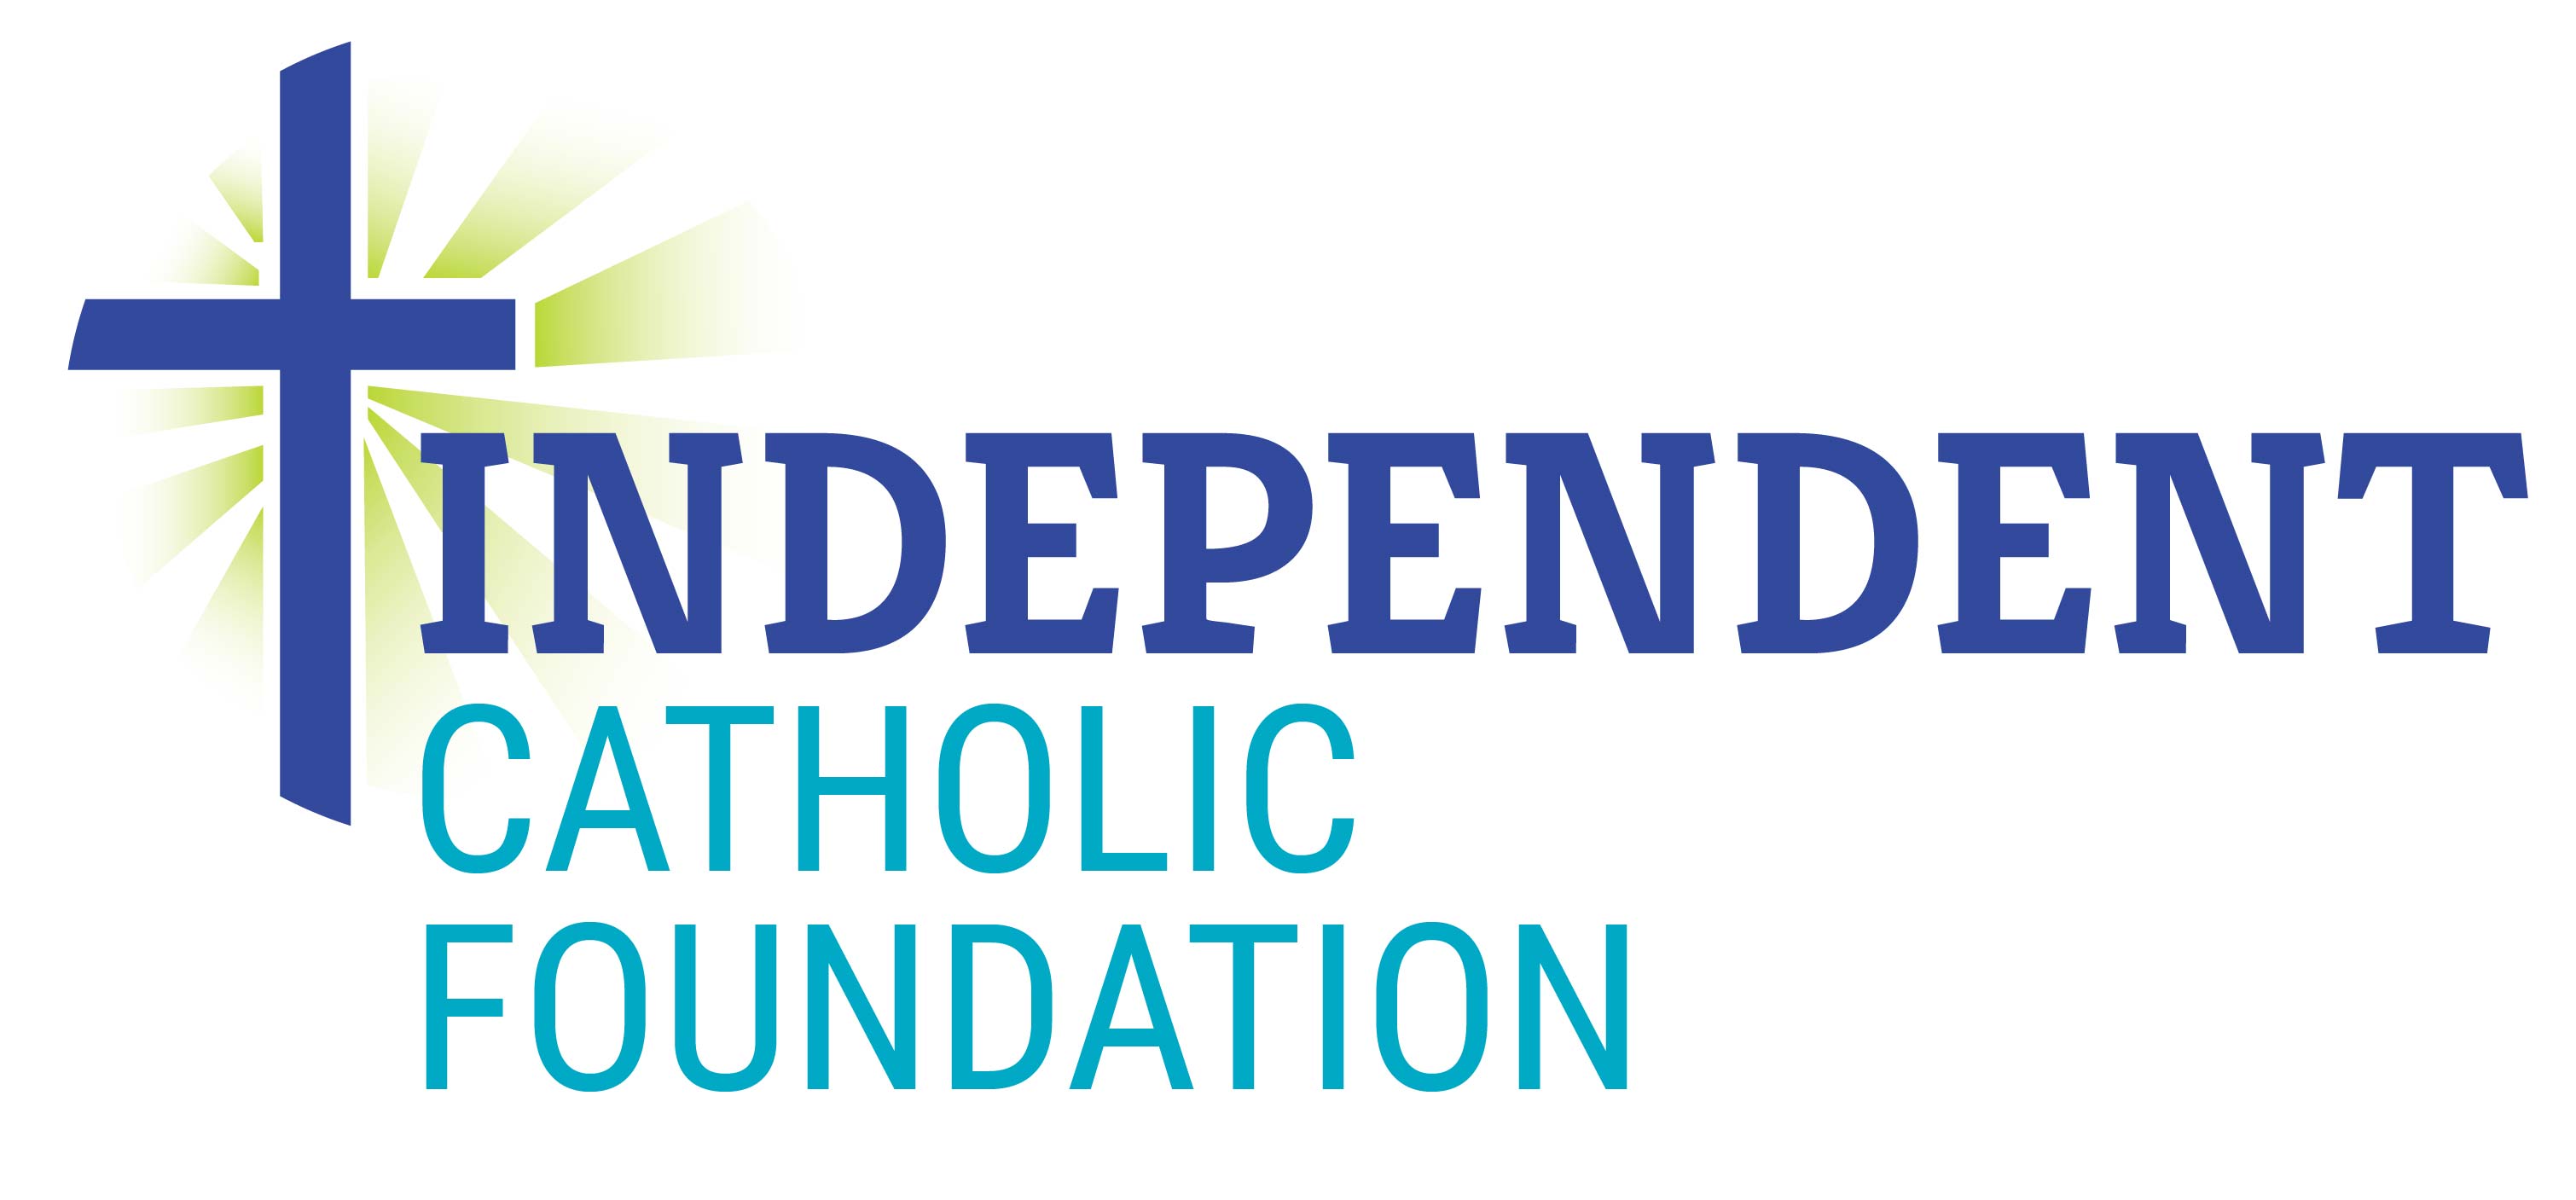 Independent Catholic Foundation